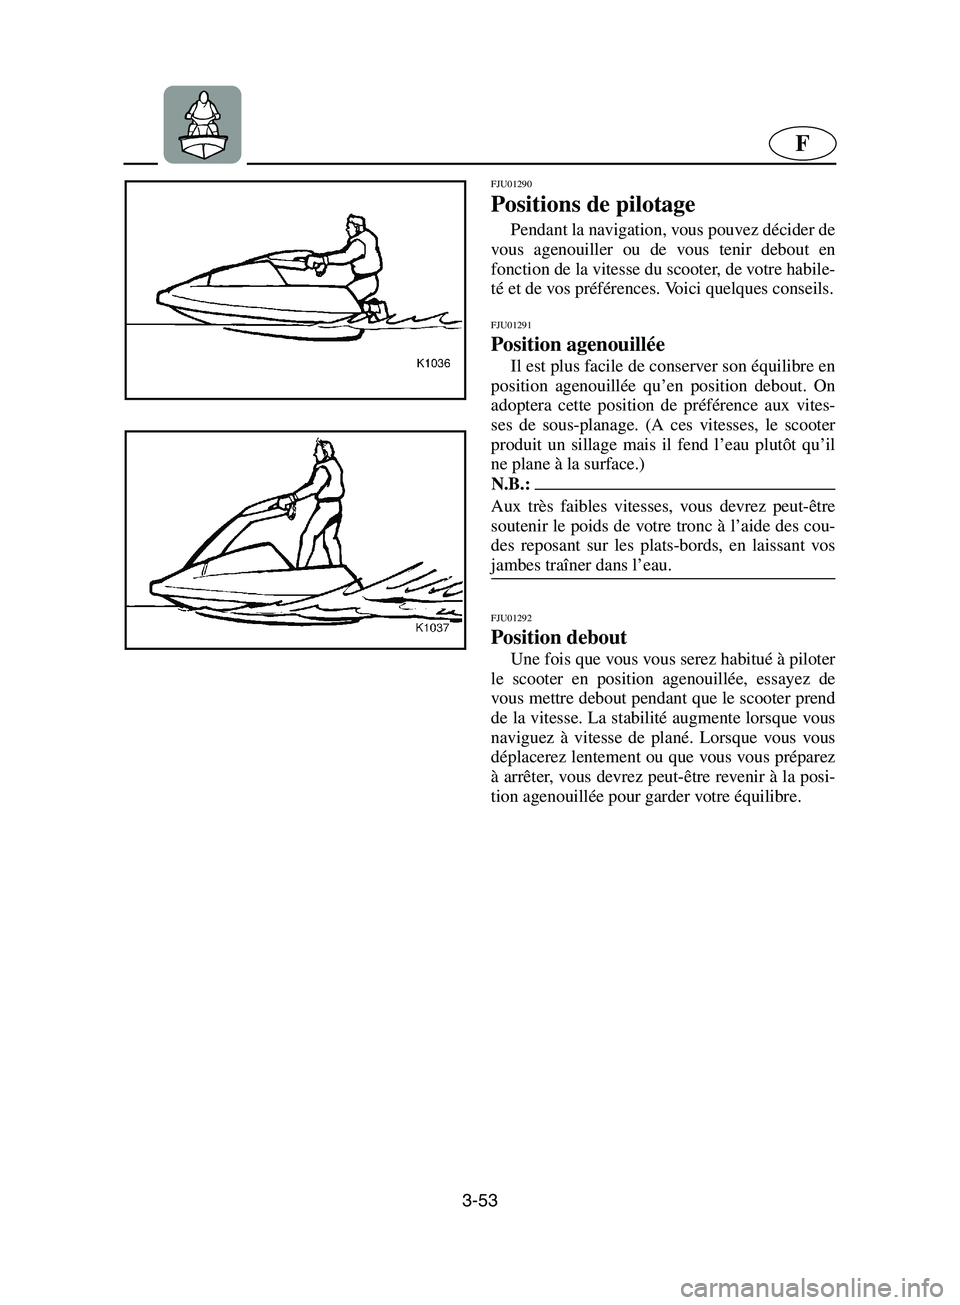 YAMAHA SUPERJET 2002  Manuale de Empleo (in Spanish) 3-53
F
FJU01290 
Positions de pilotage  
Pendant la navigation, vous pouvez décider de
vous agenouiller ou de vous tenir debout en
fonction de la vitesse du scooter, de votre habile-
té et de vos pr